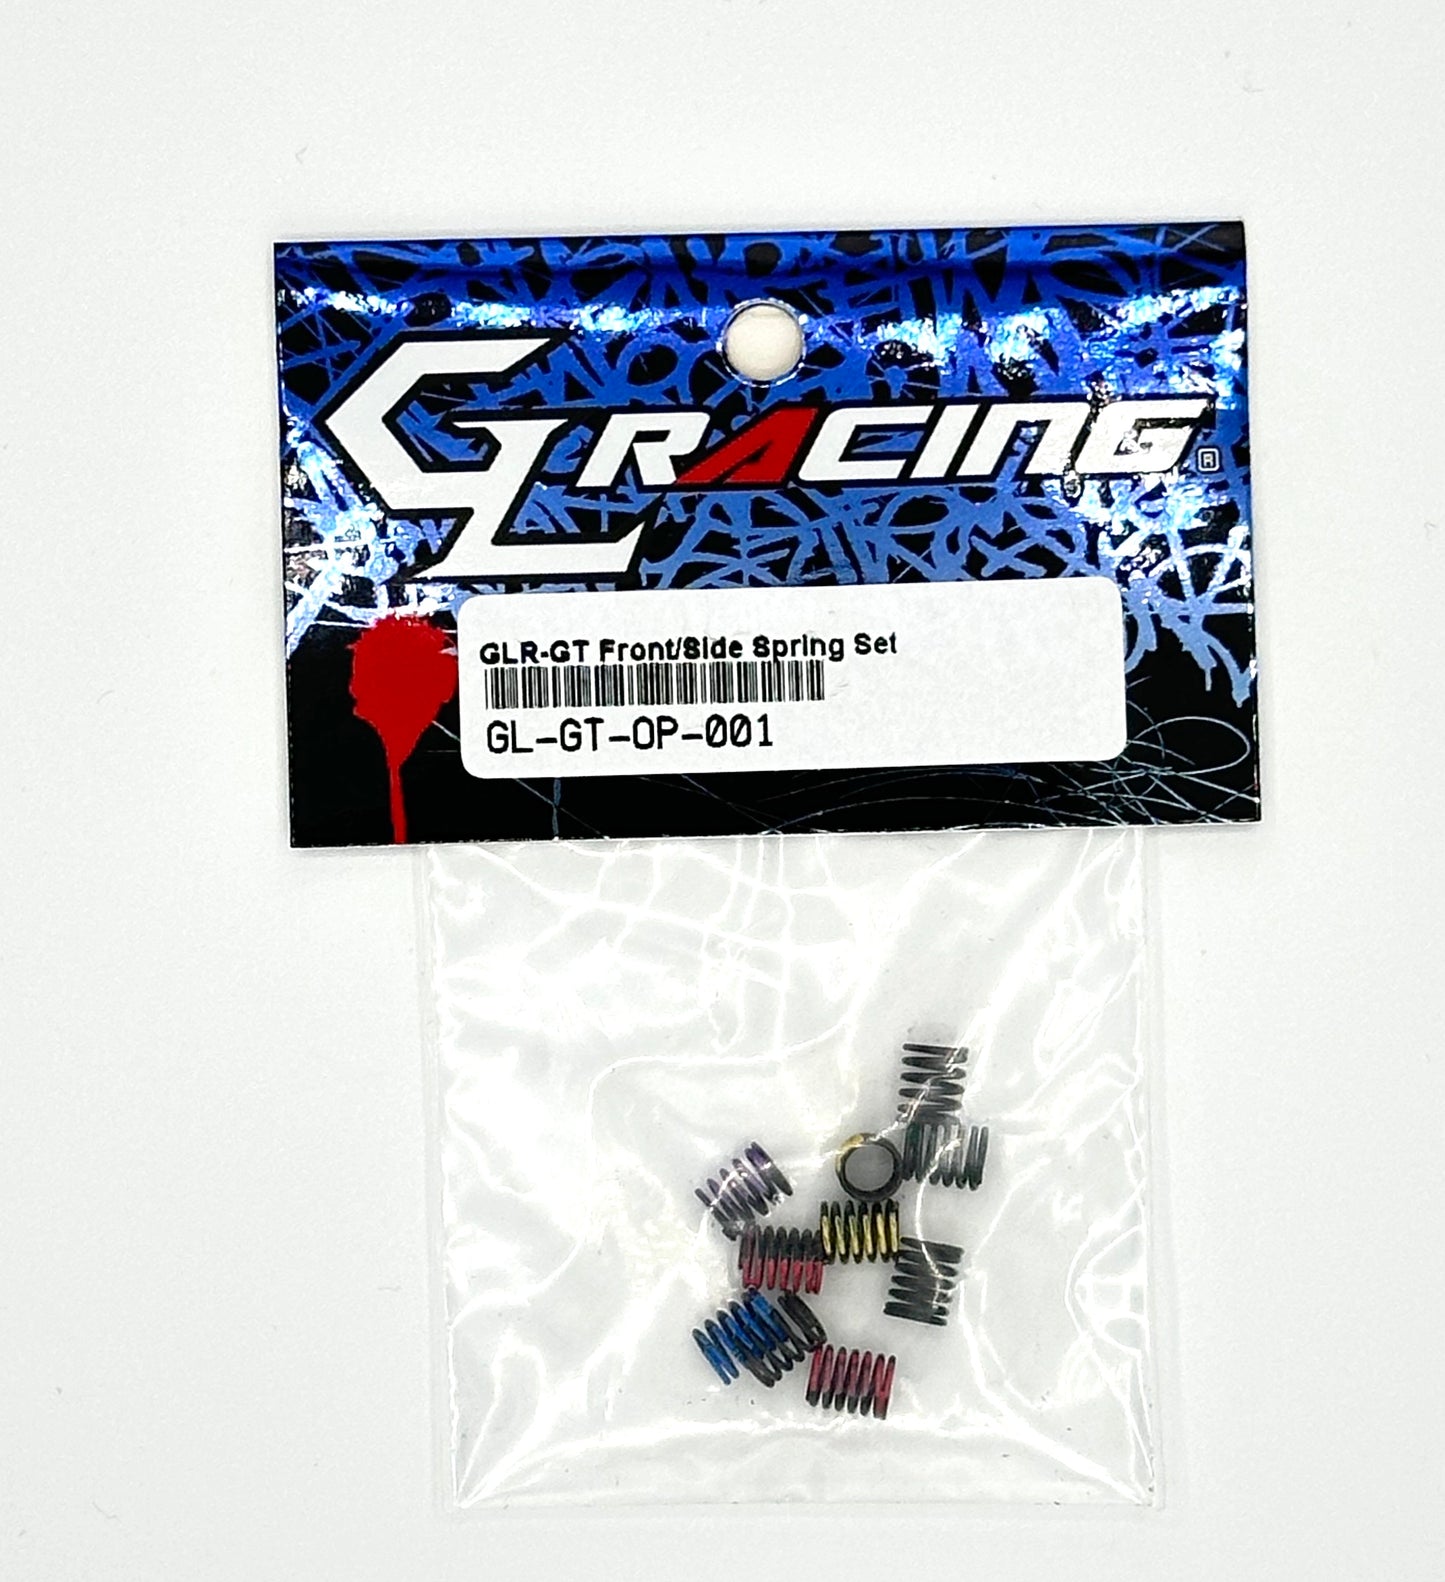 GLR-GT Front/Side Spring Set GL-GT-OP-001